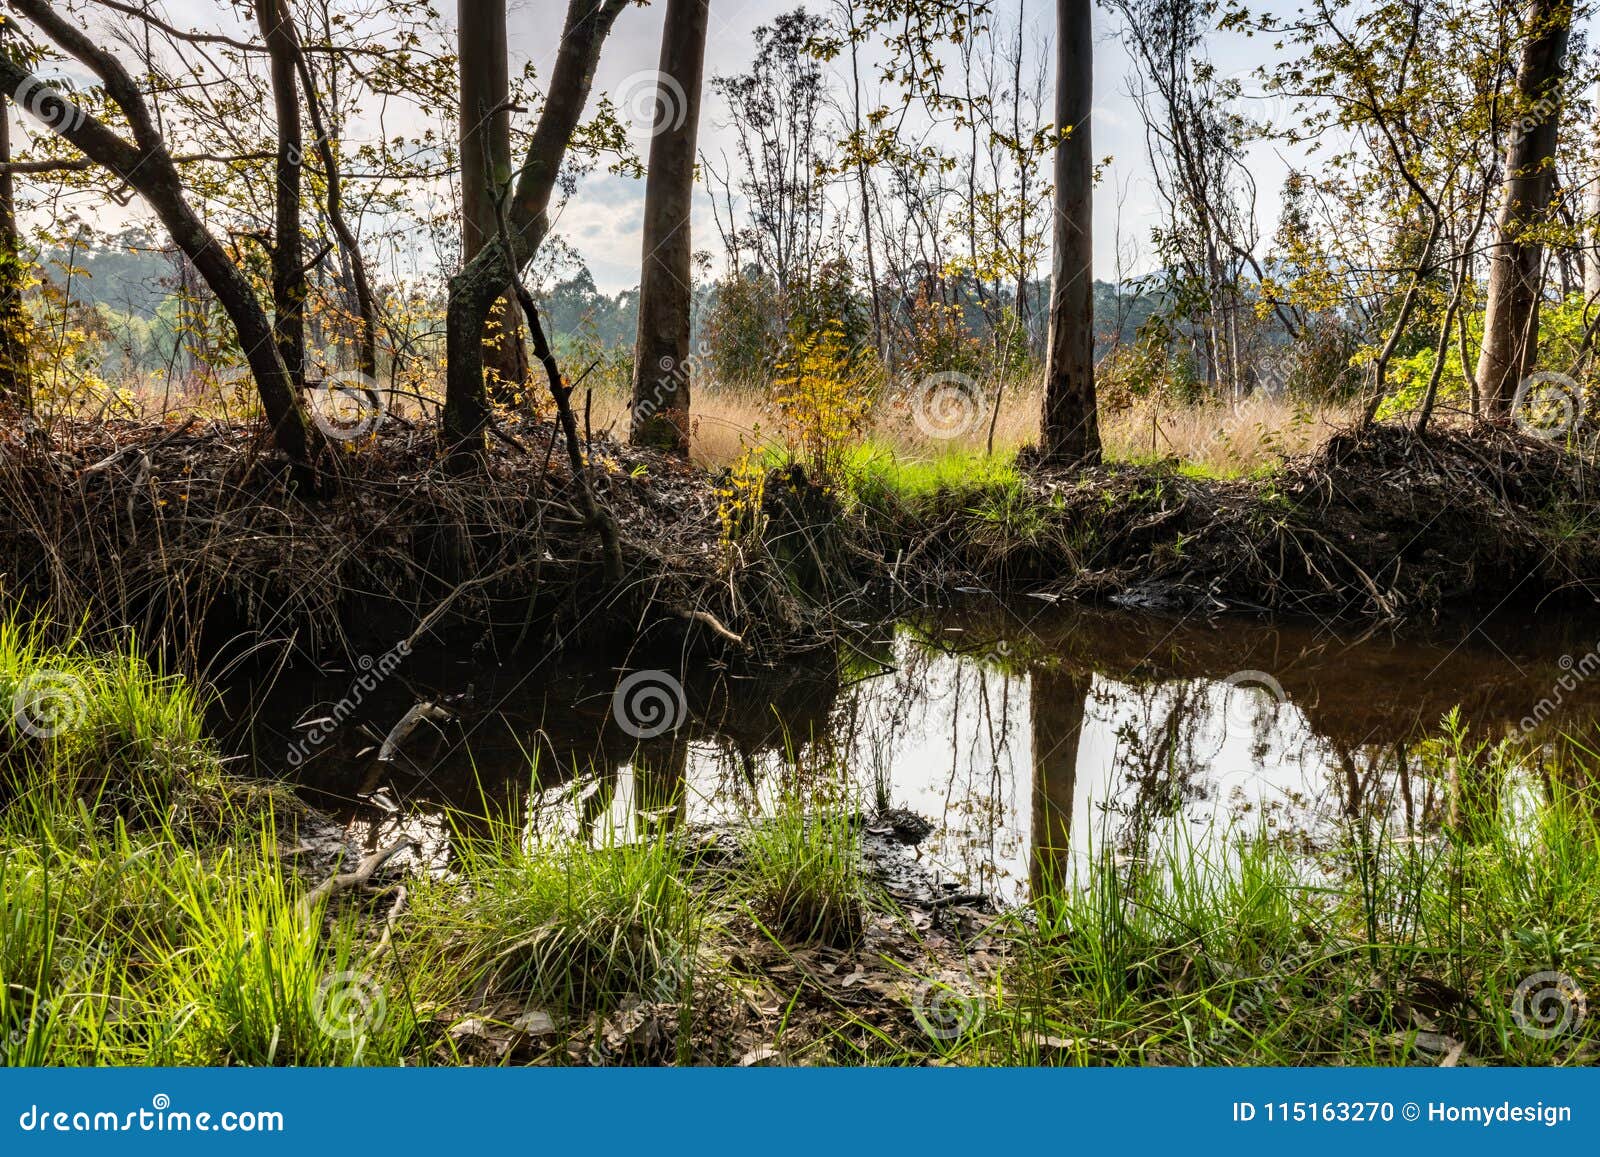 small pond in lagoas de bertiandos